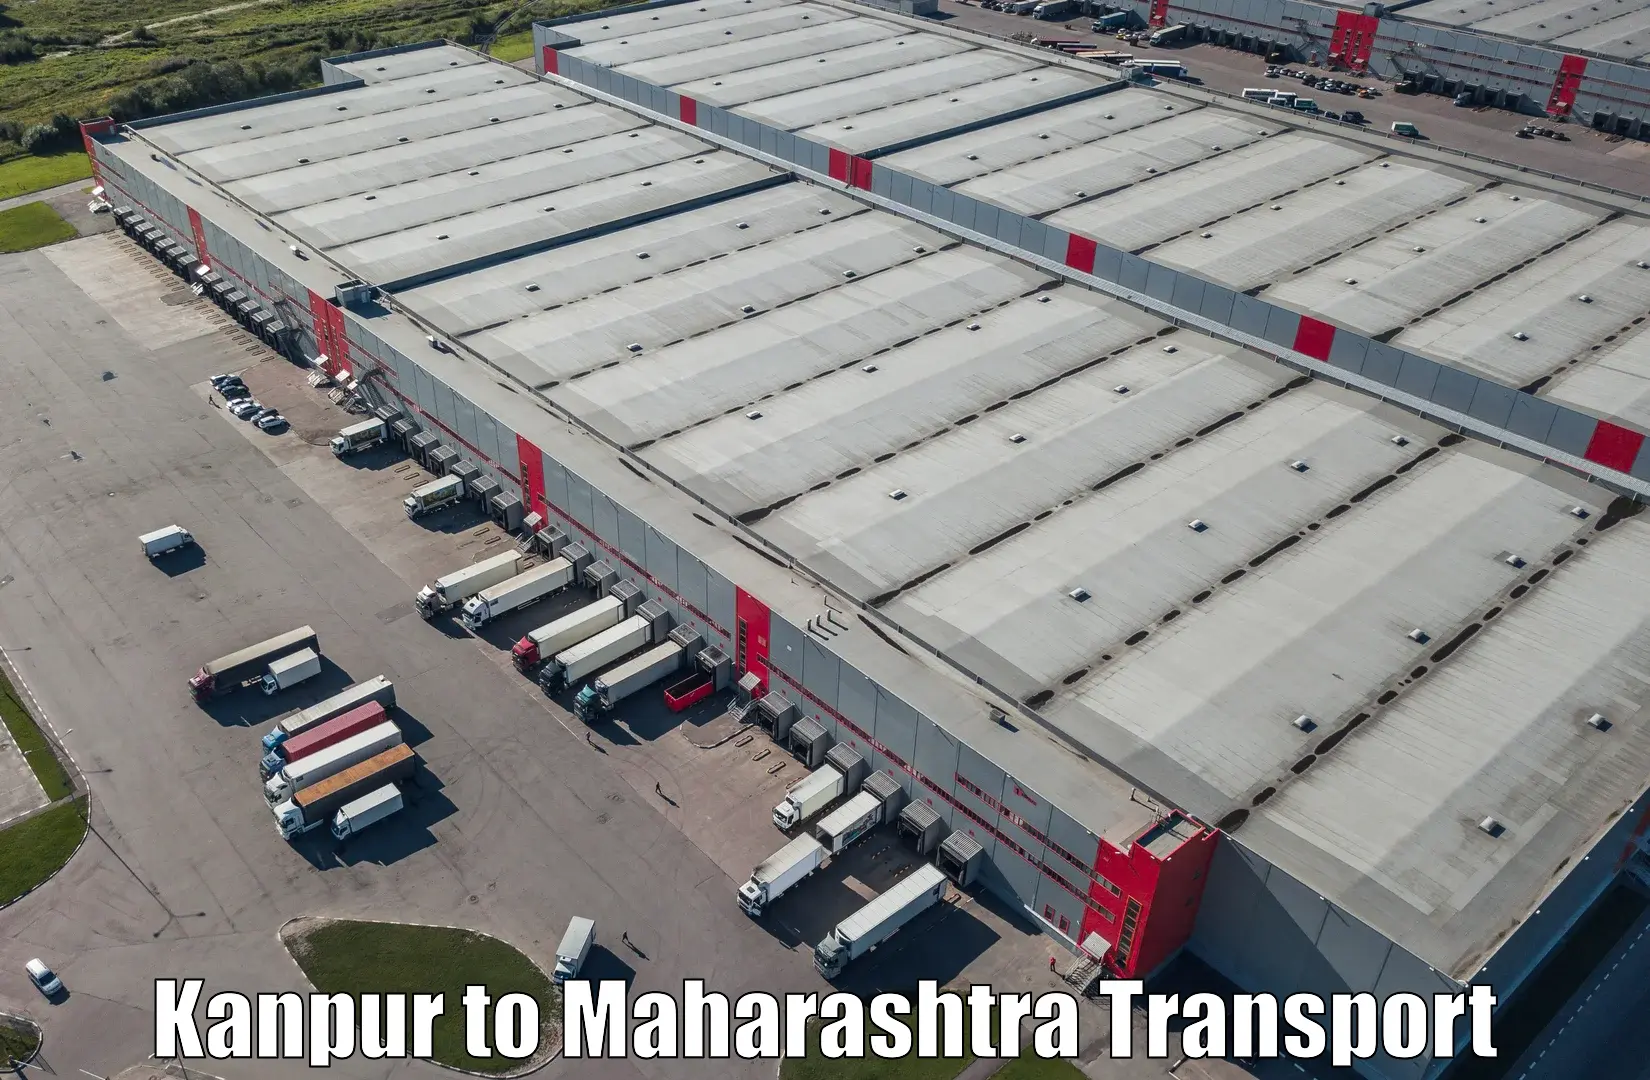 Furniture transport service Kanpur to Satara